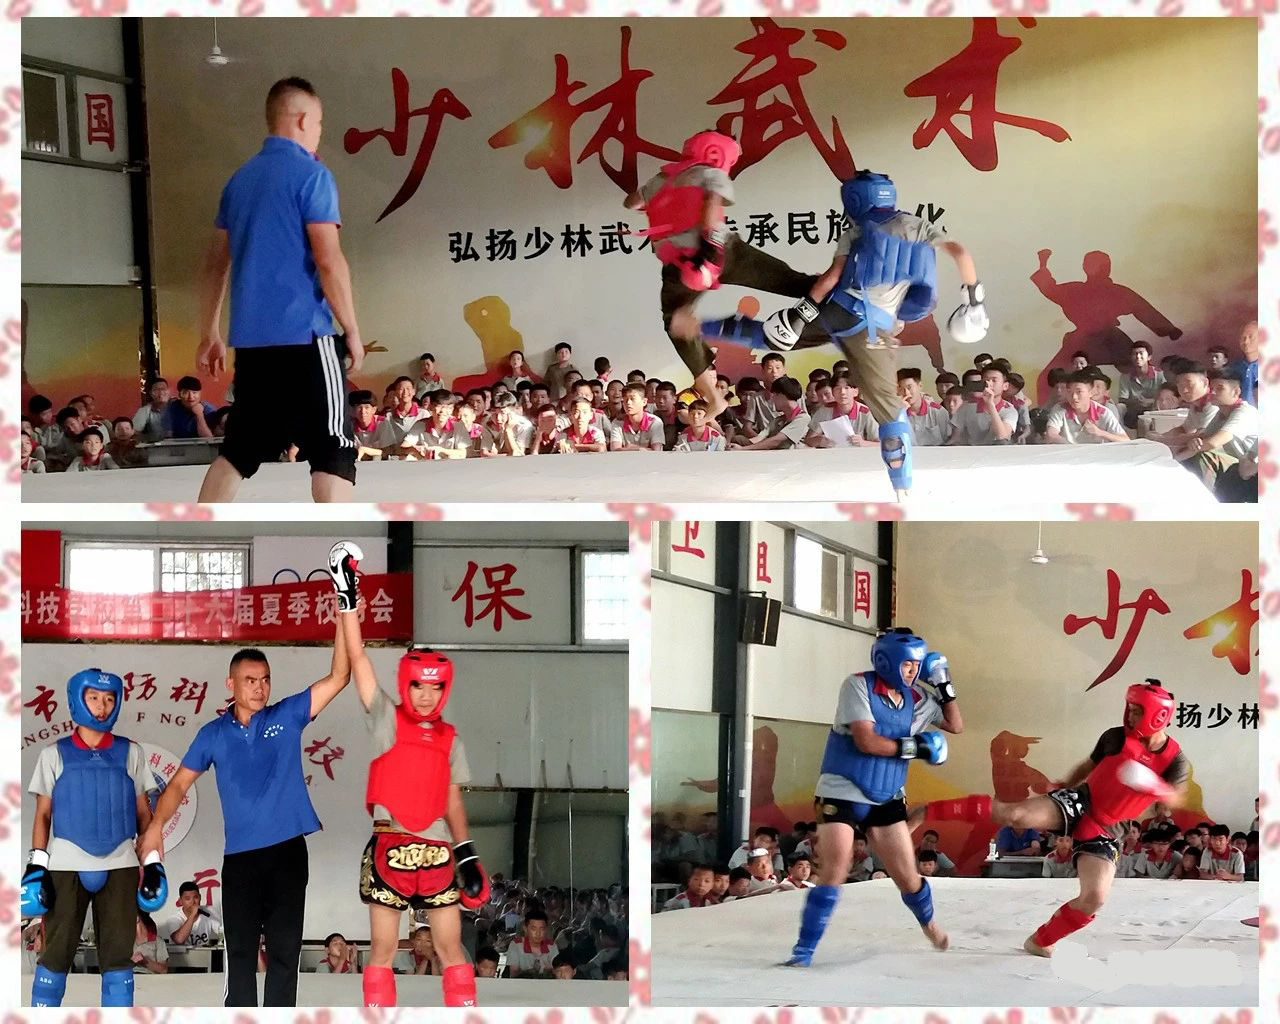 少林寺武术学校的学员在表演武术